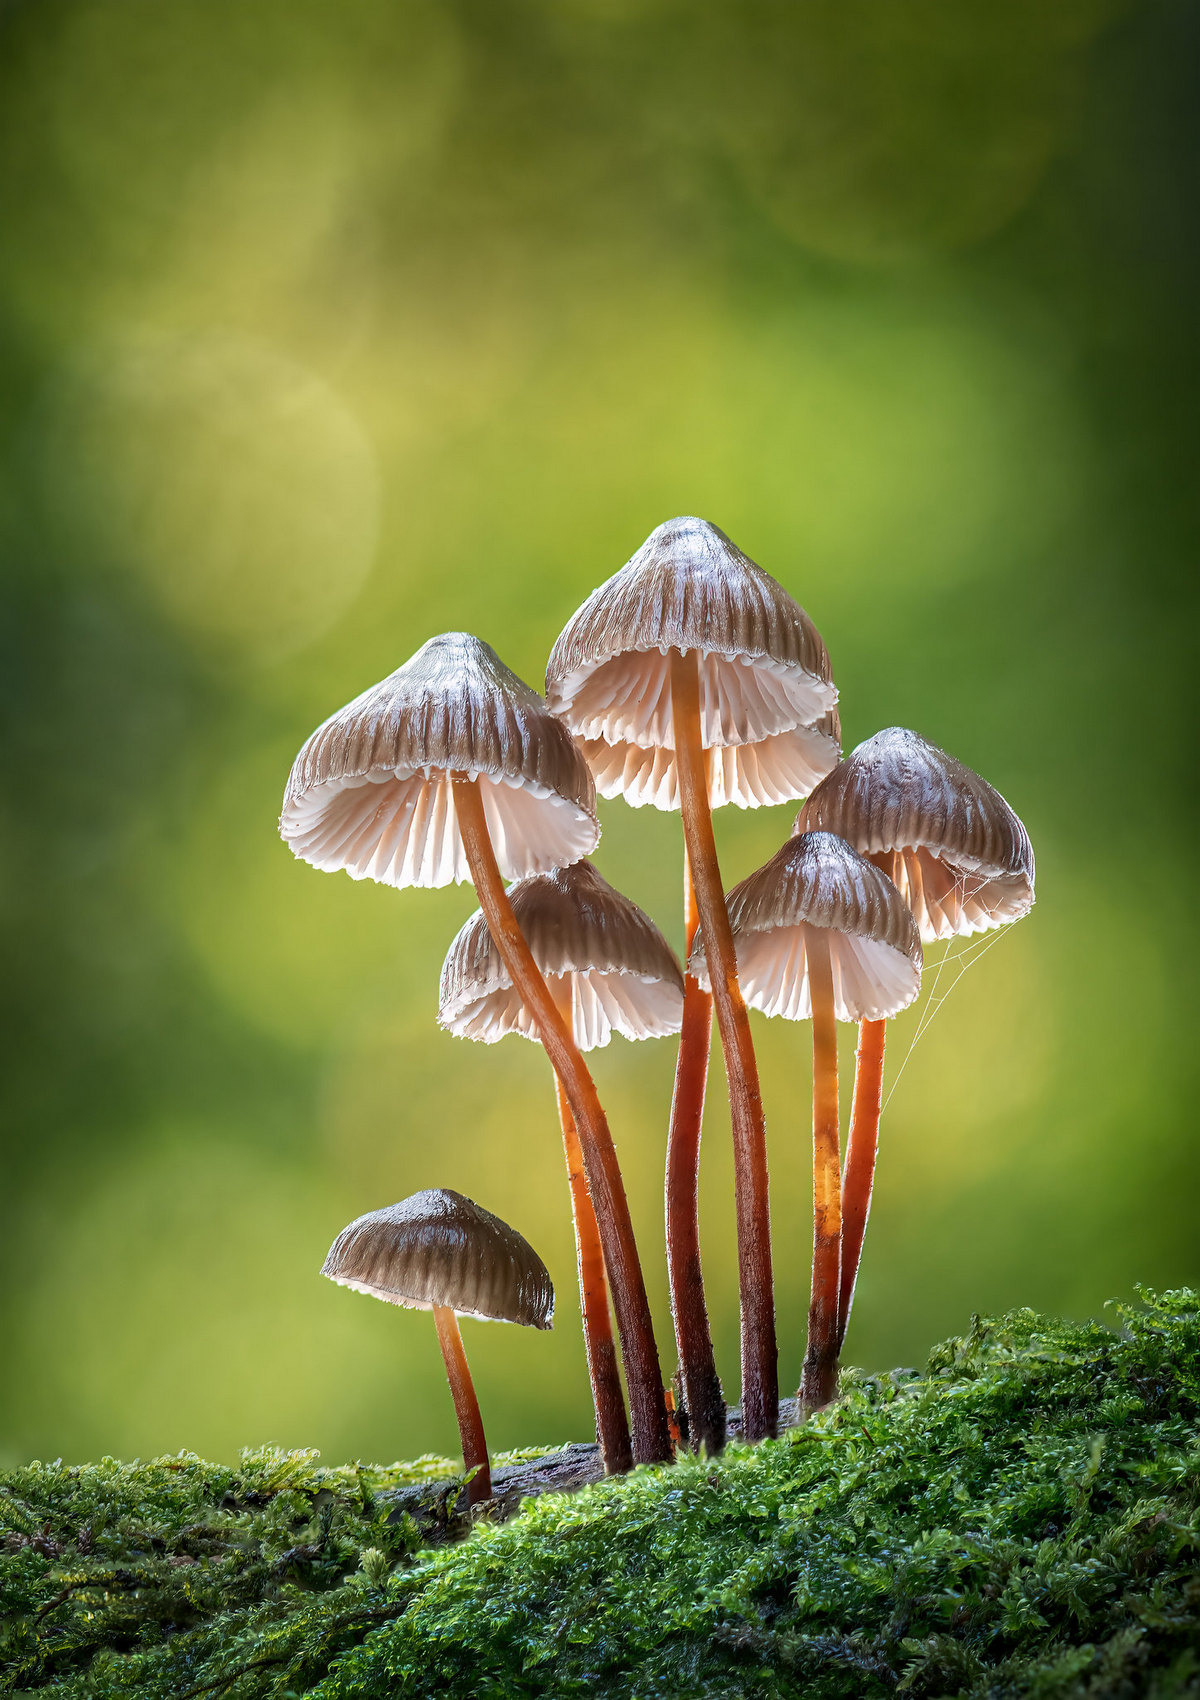 Эффектные снимки грибов с премии Садовый фотограф года